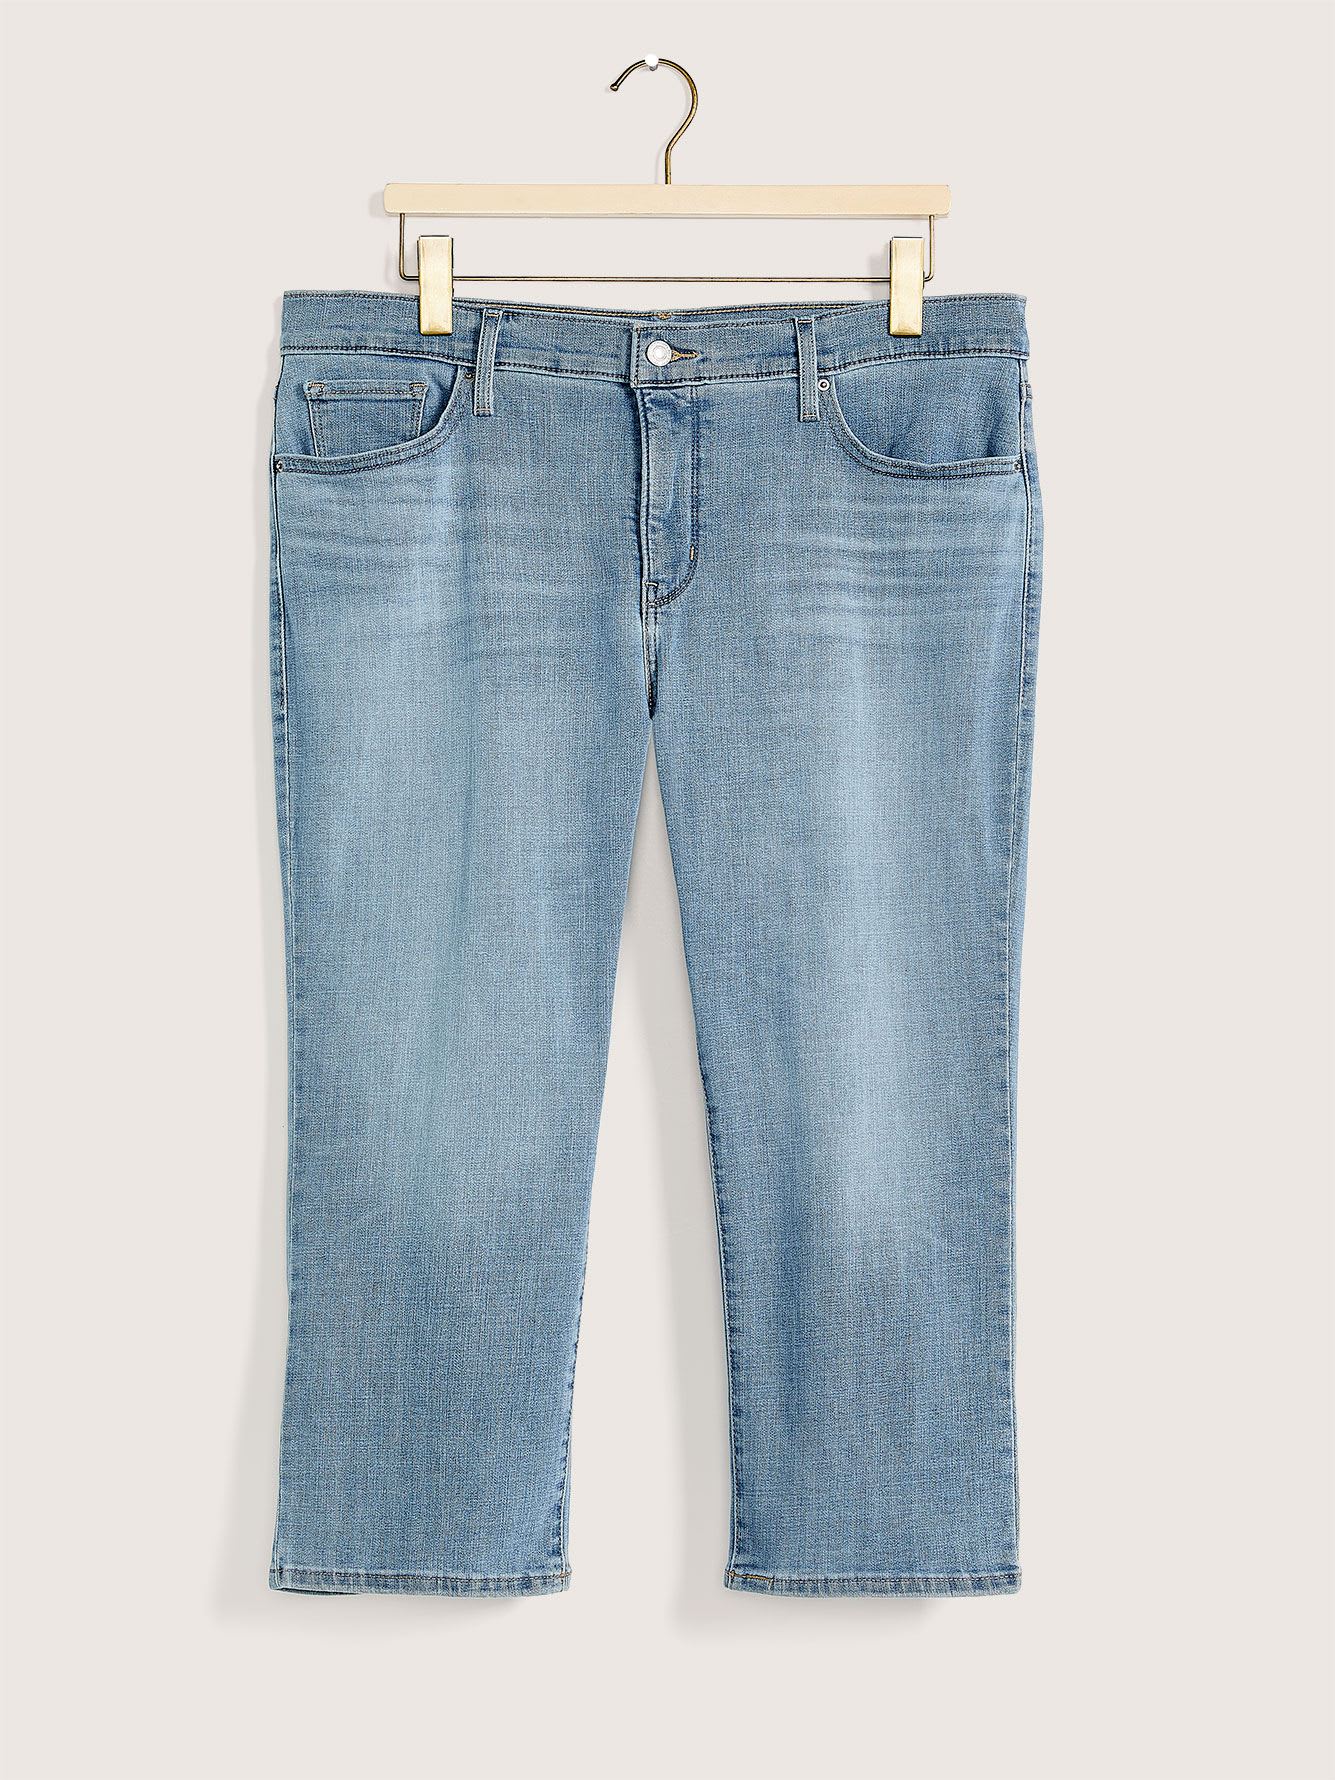 Medium Wash 311 Shaping Skinny Capri Jeans - Levi's | Penningtons